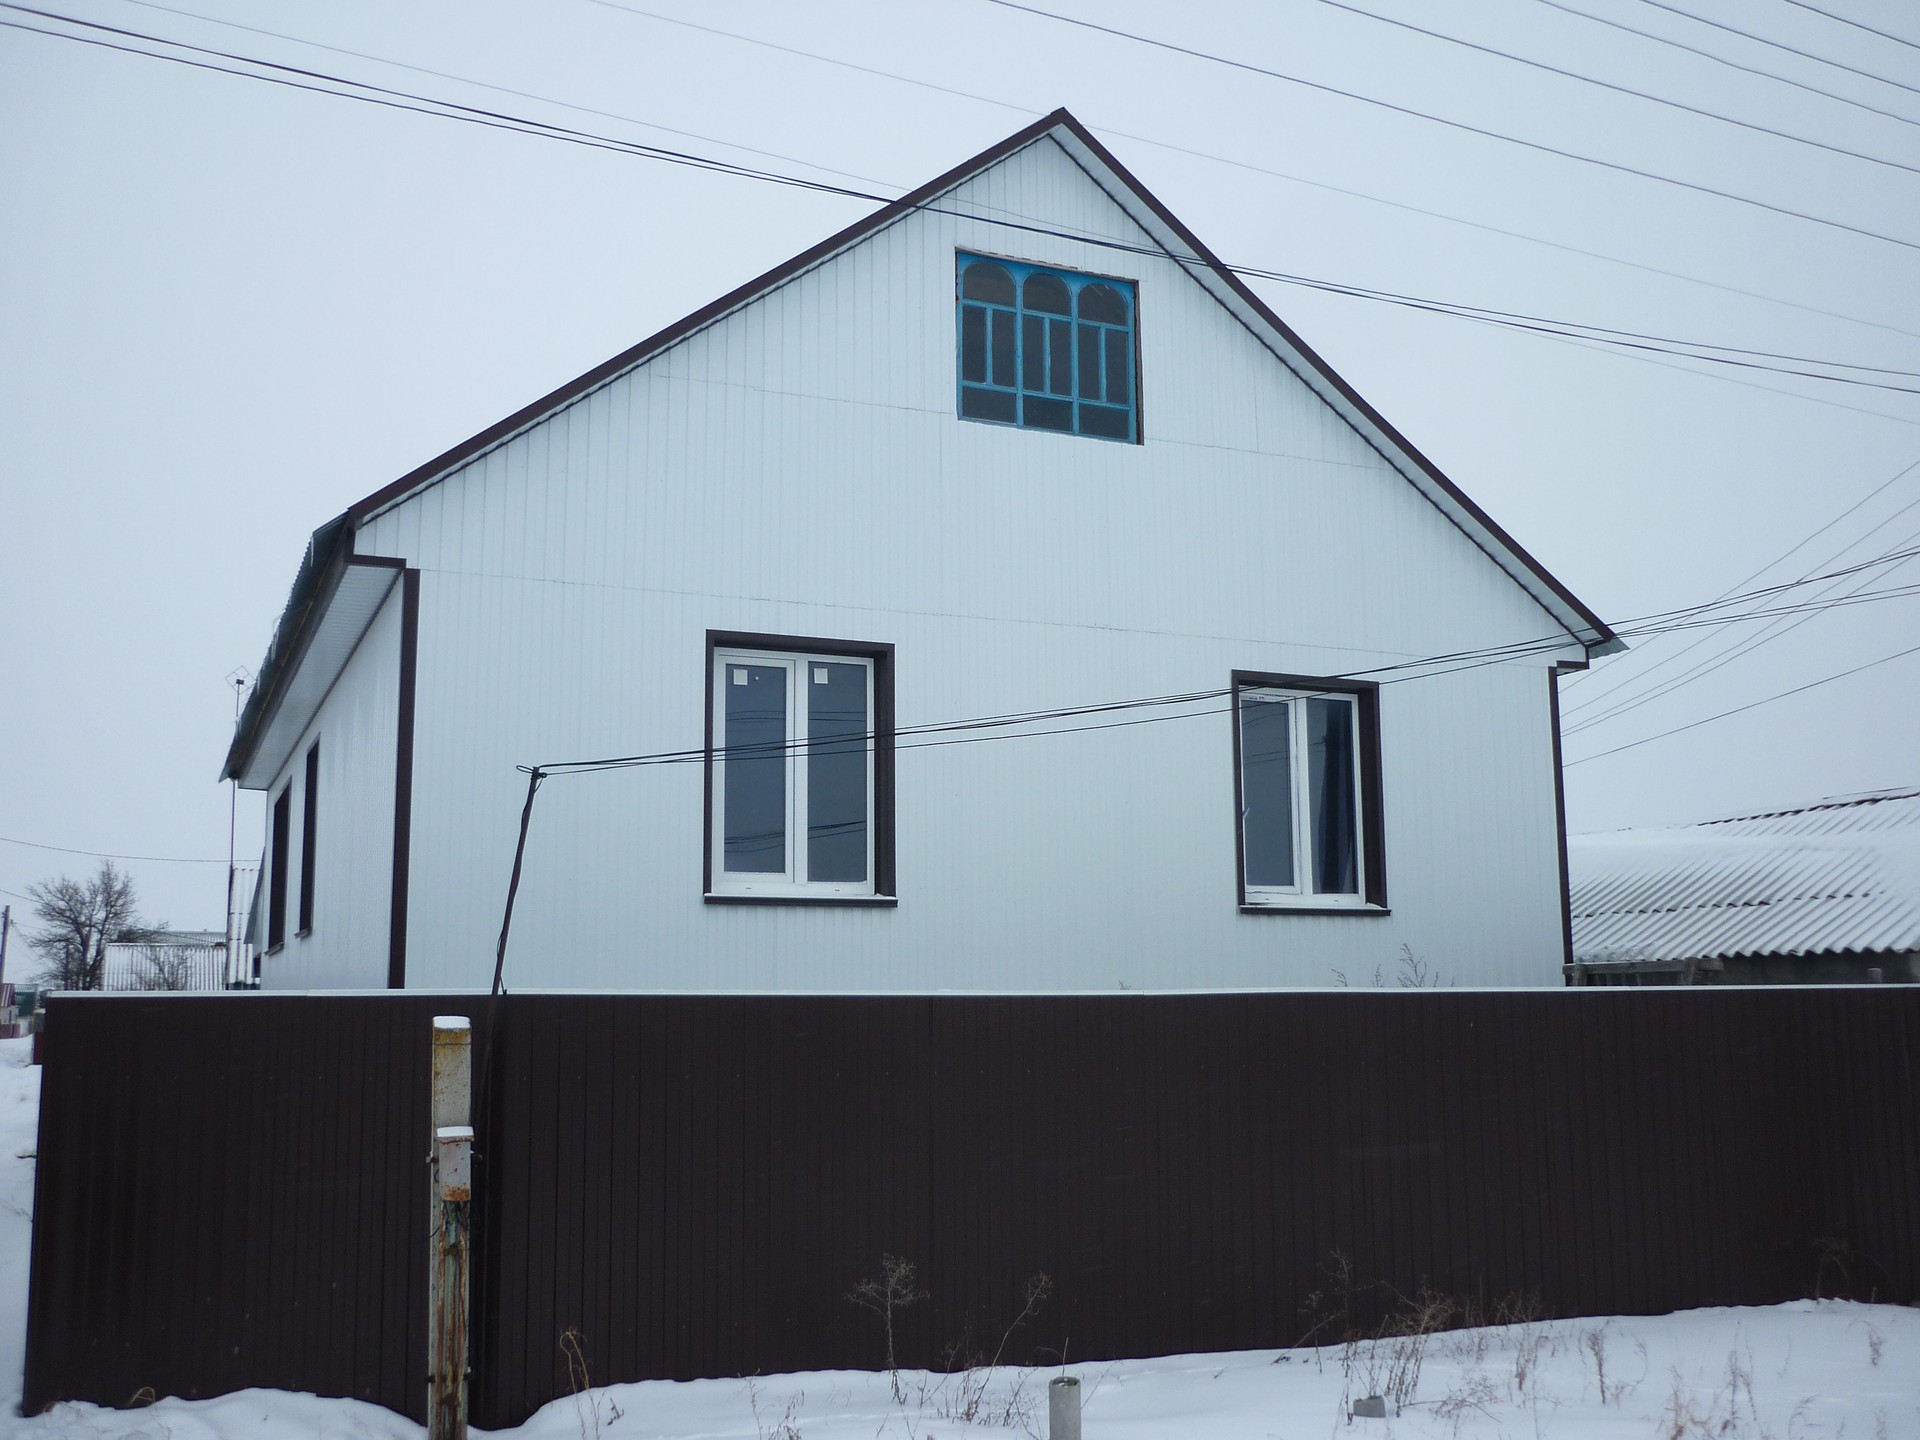 Купить дом в поселке волгоградской области